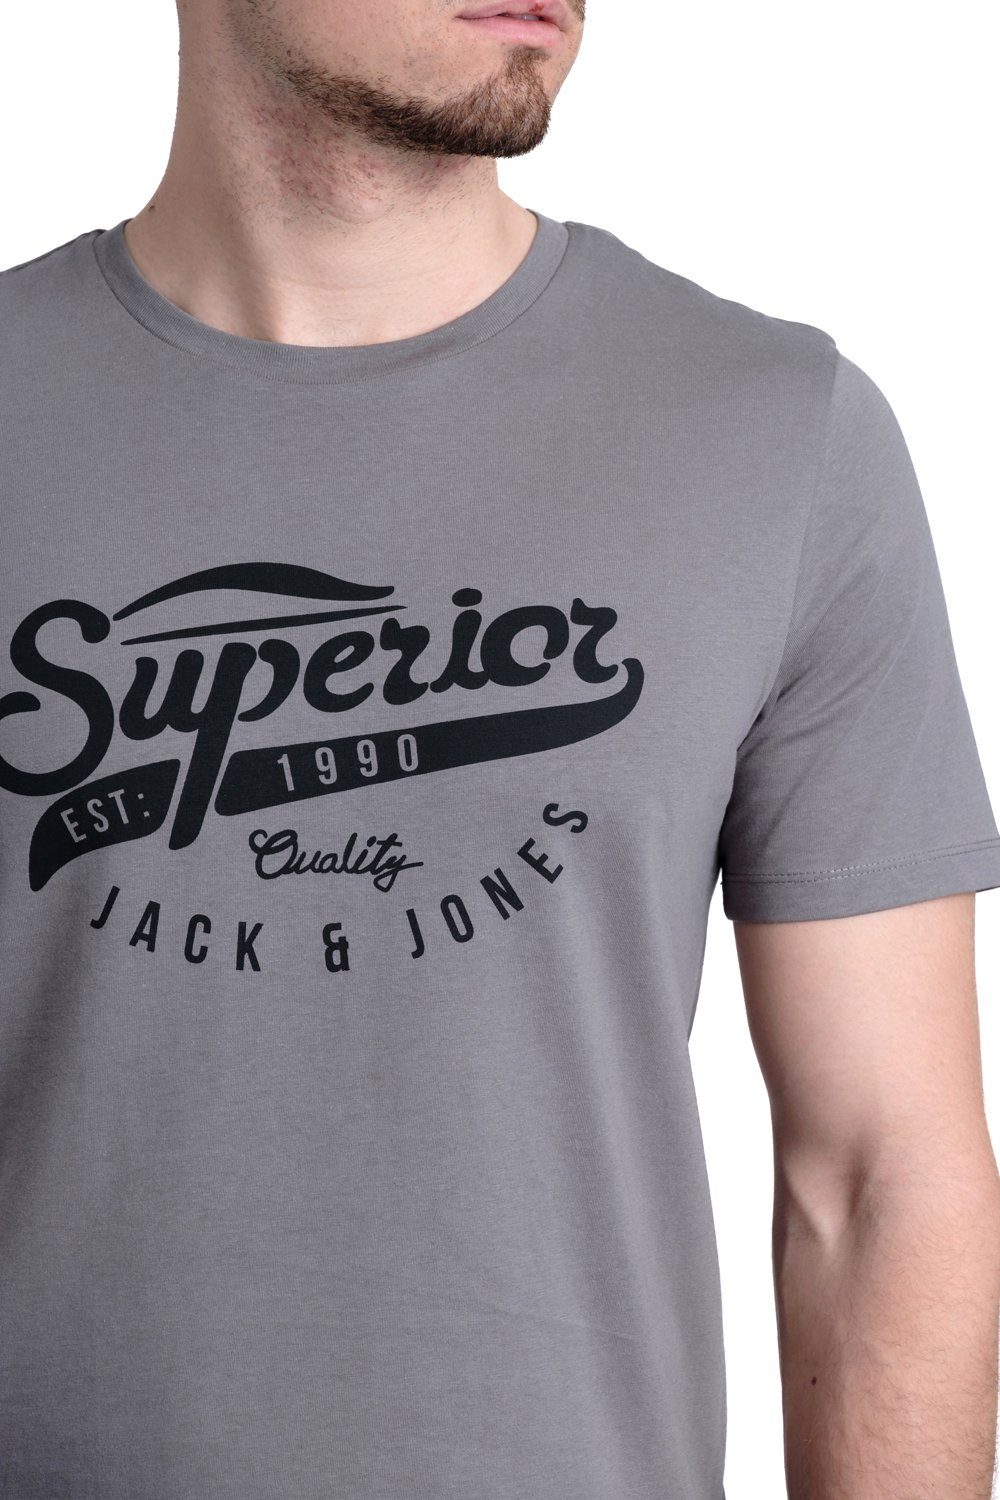 & Baumwolle Jones Jack mit aus T-Shirt Aufdruck Print-Shirt OPT19